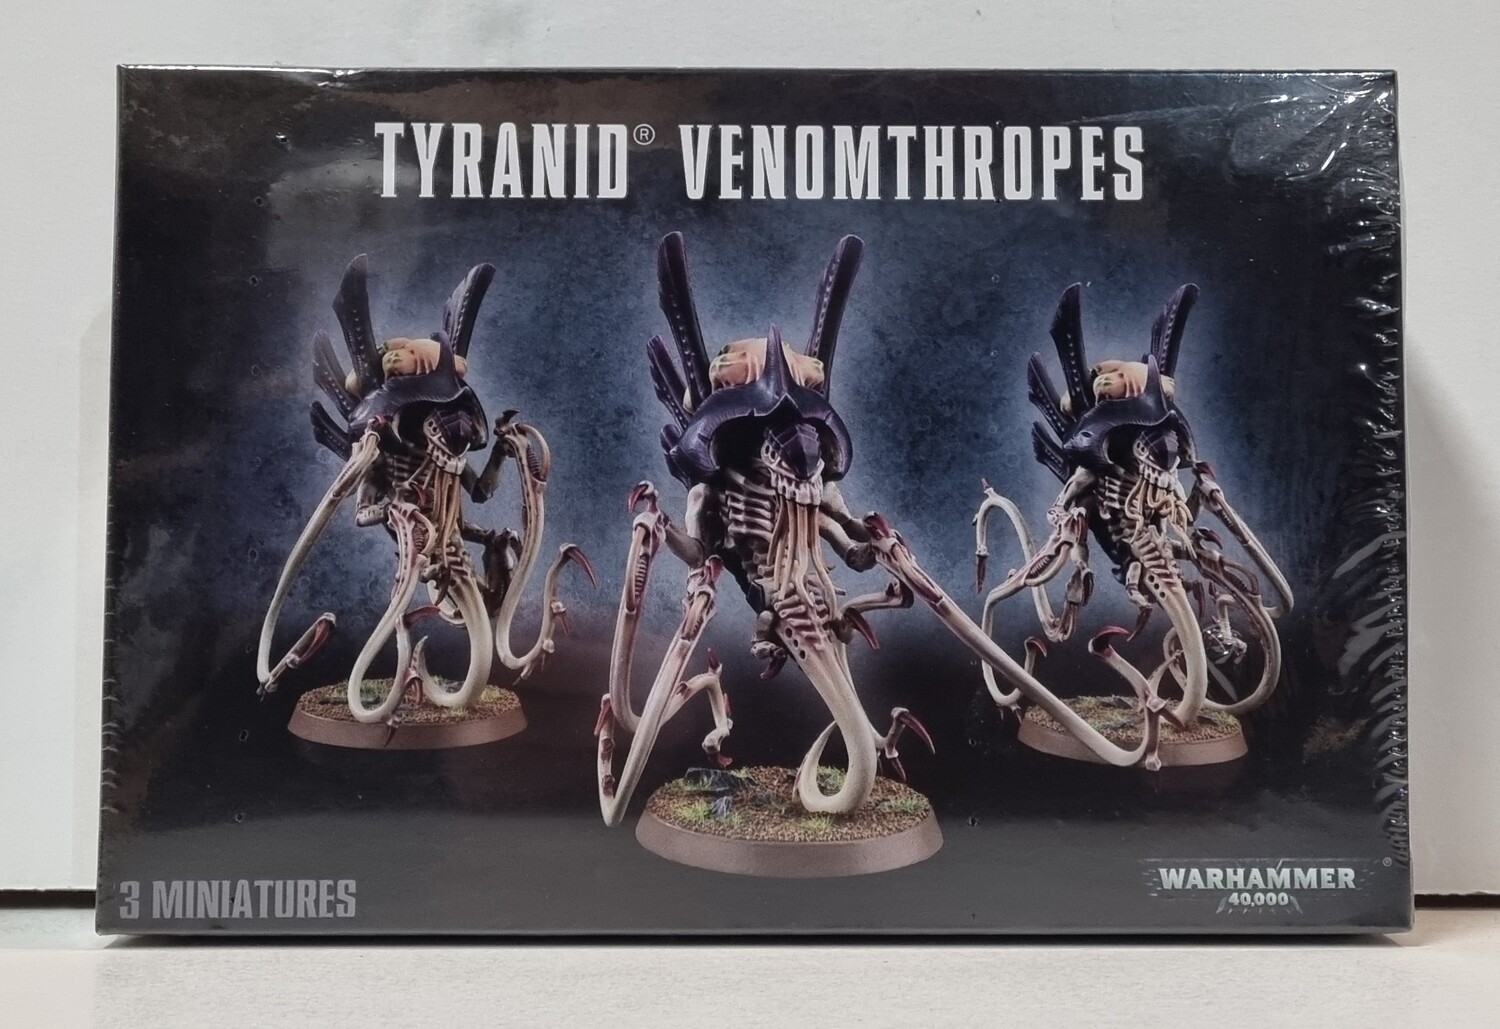 Warhammer, 40k, 51-22, Tyranid Venomthropes